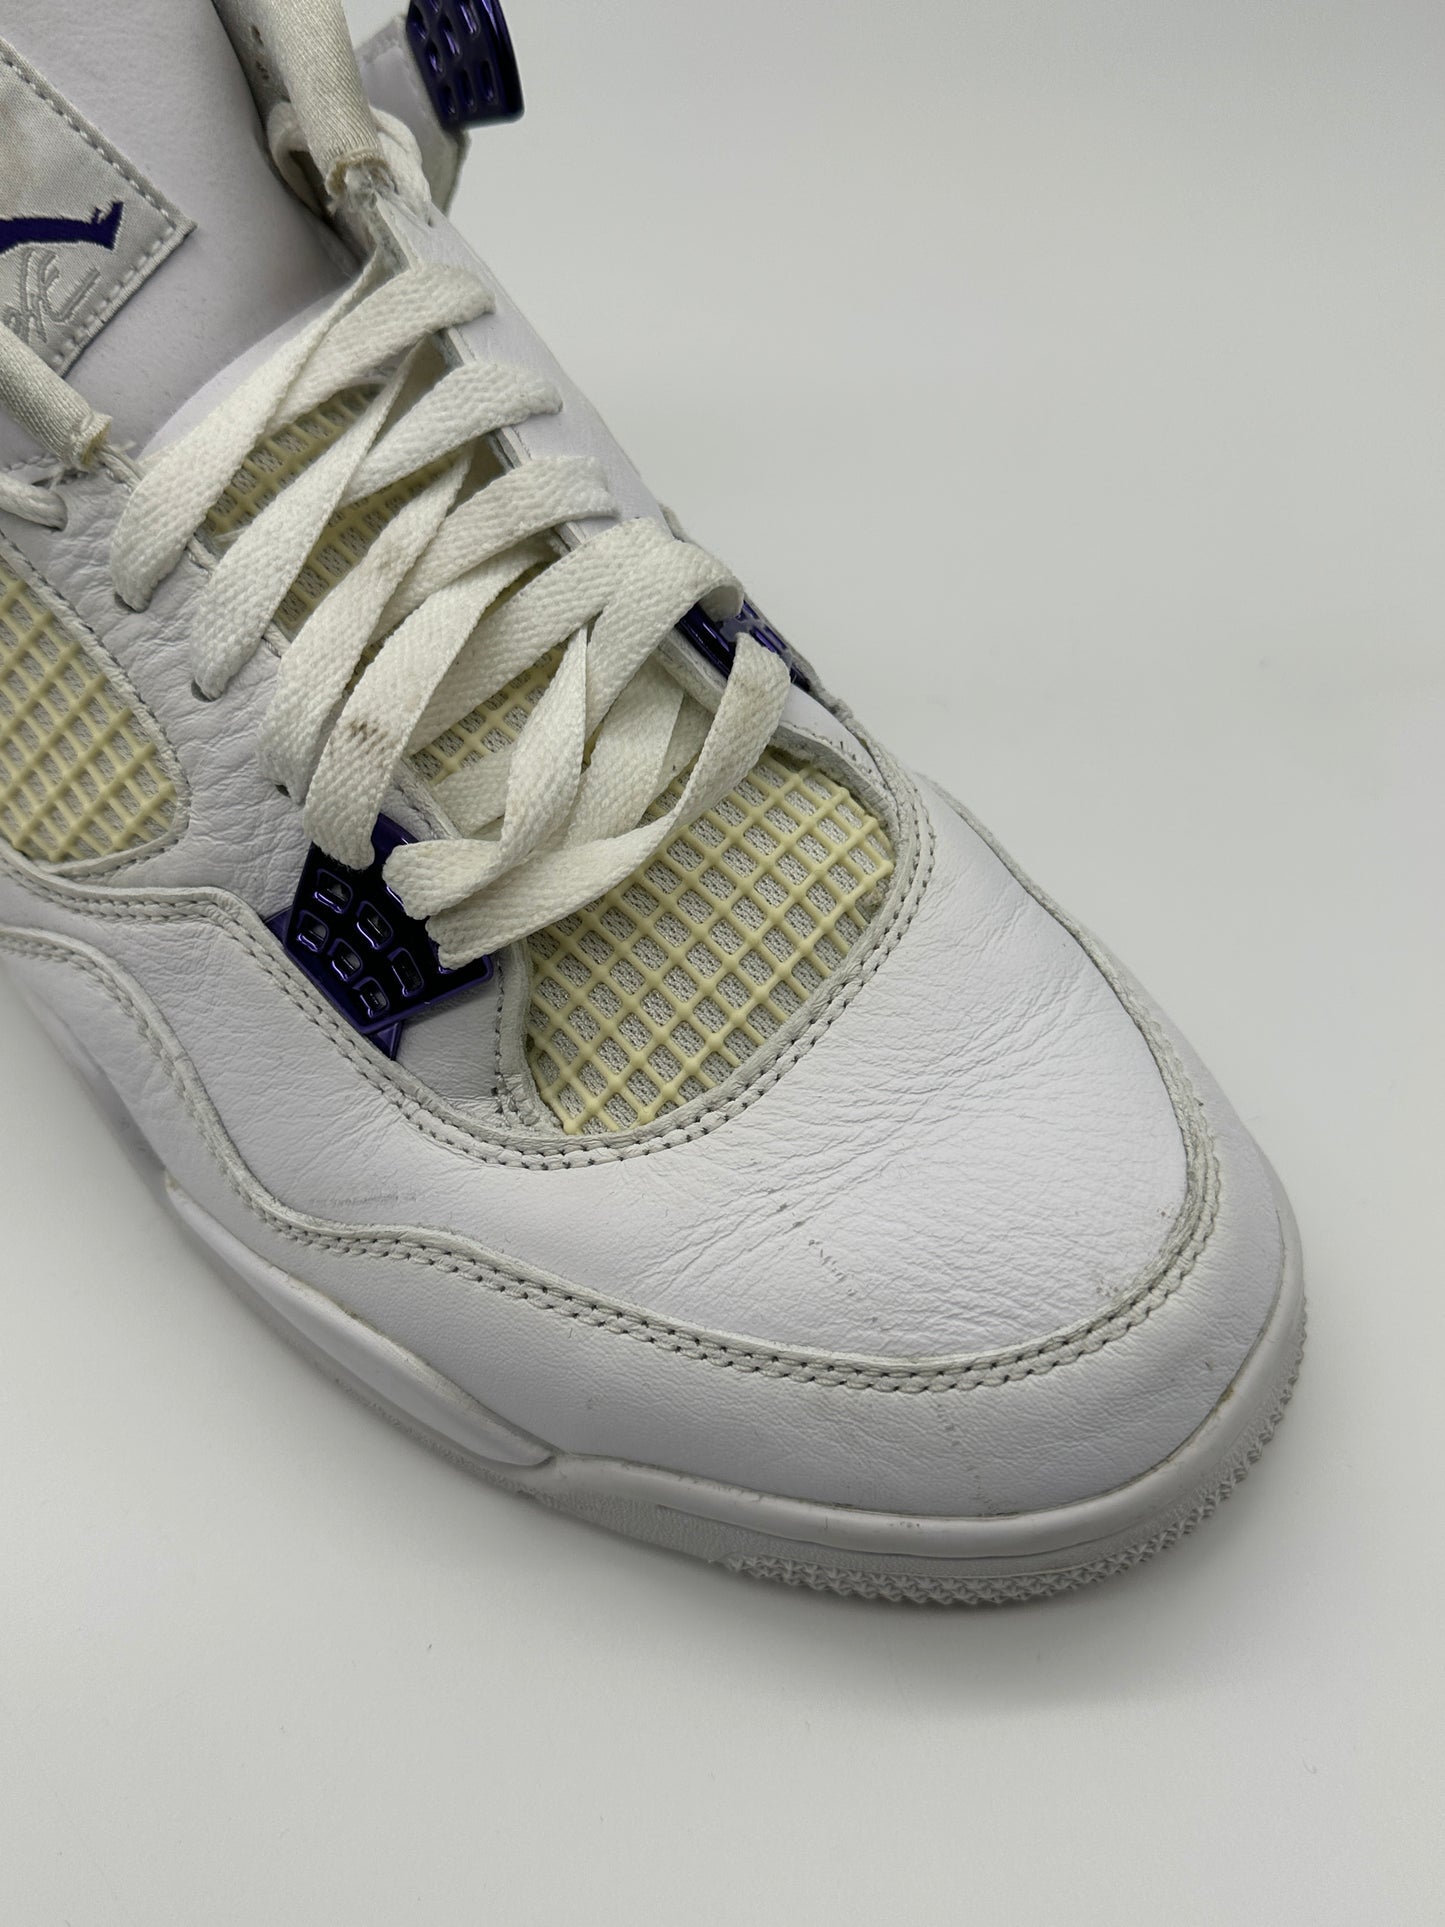 Jordan 4 Sneakers